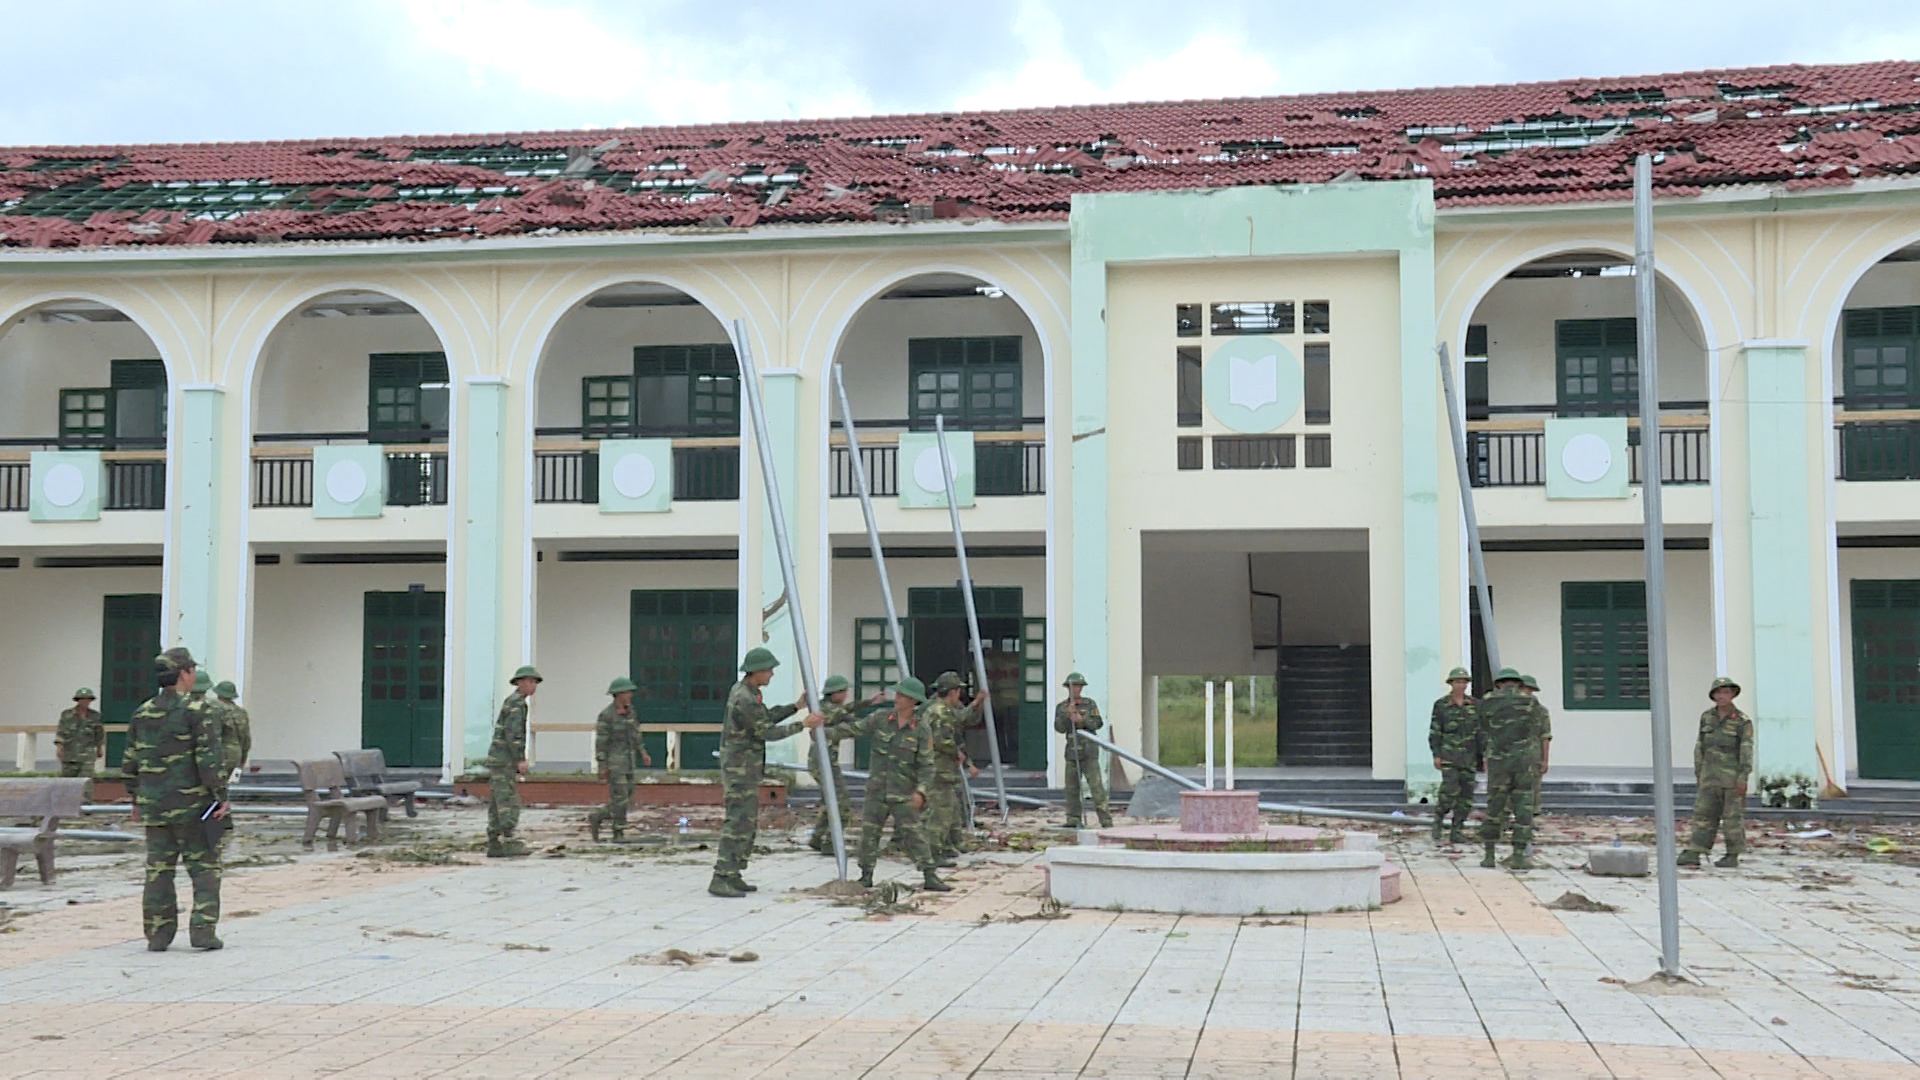 Trường THCS Chu Văn An (xã Khánh Hiệp, huyện Khánh Vĩnh) mới xây và đưa vào sử dụng năm 2013 đã bị bão làm hư hỏng toàn bộ mái. 